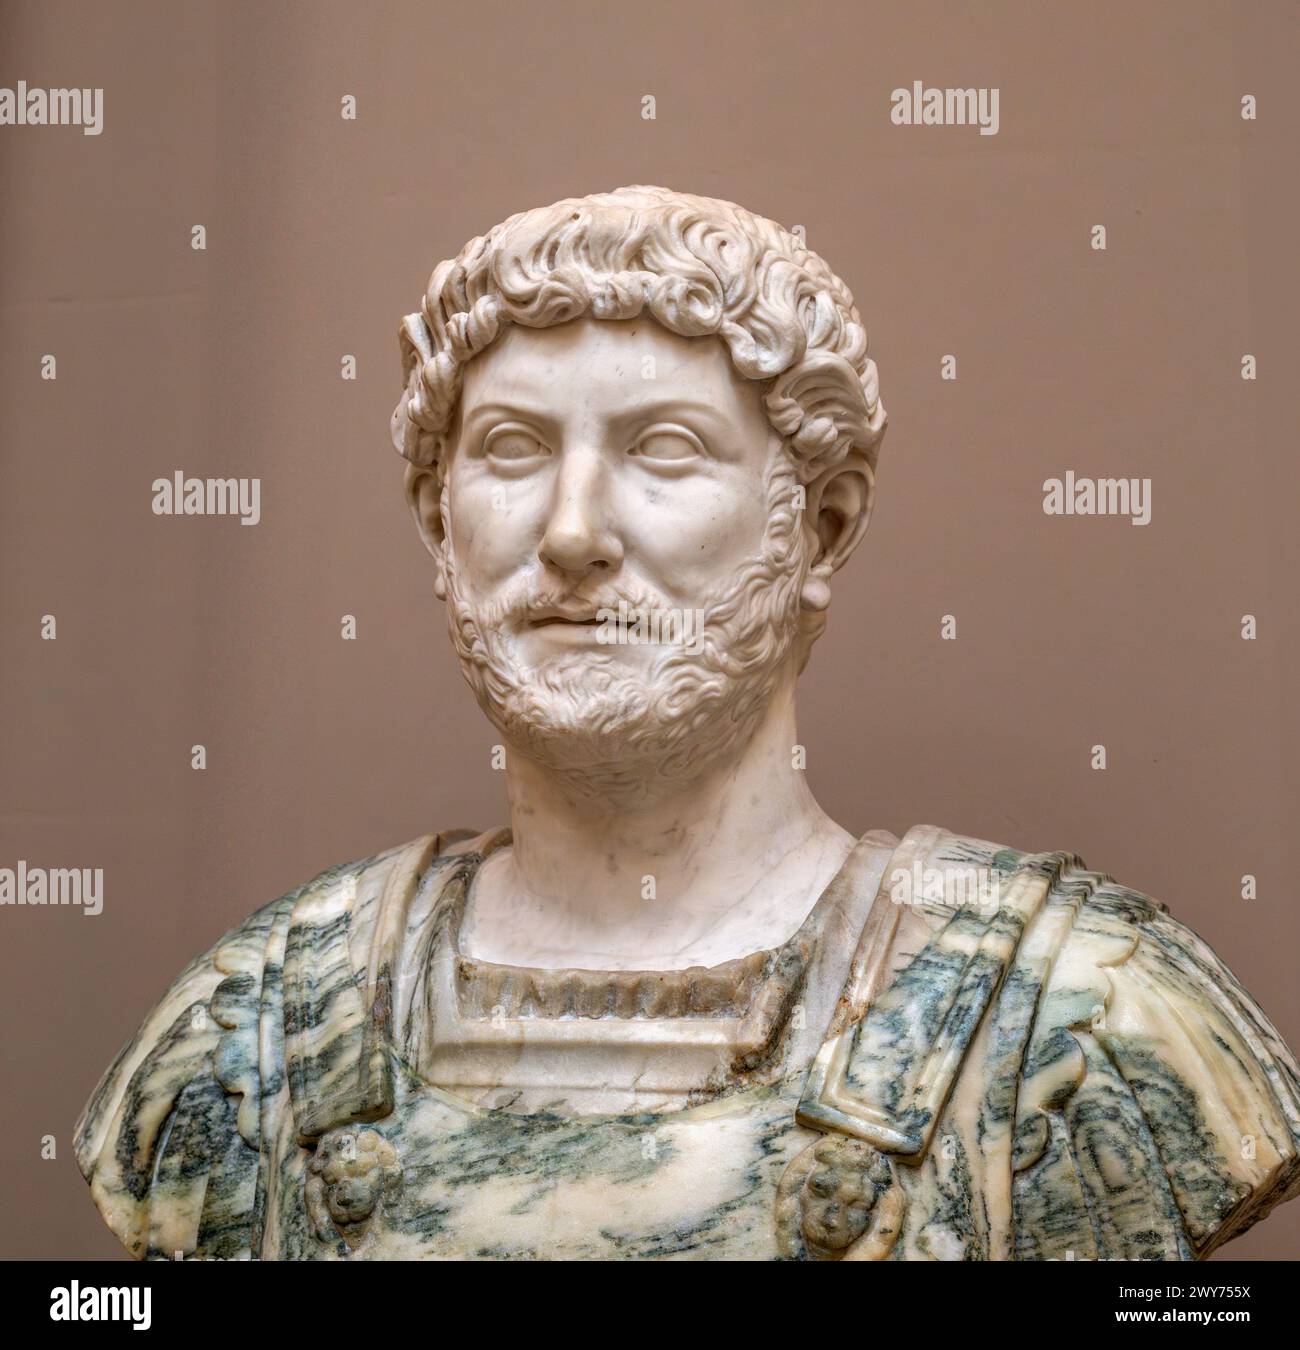 Testa di marmo dell'imperatore romano Adriano (76 d.C. – 138 d.C.), 1700-1800 ca Foto Stock